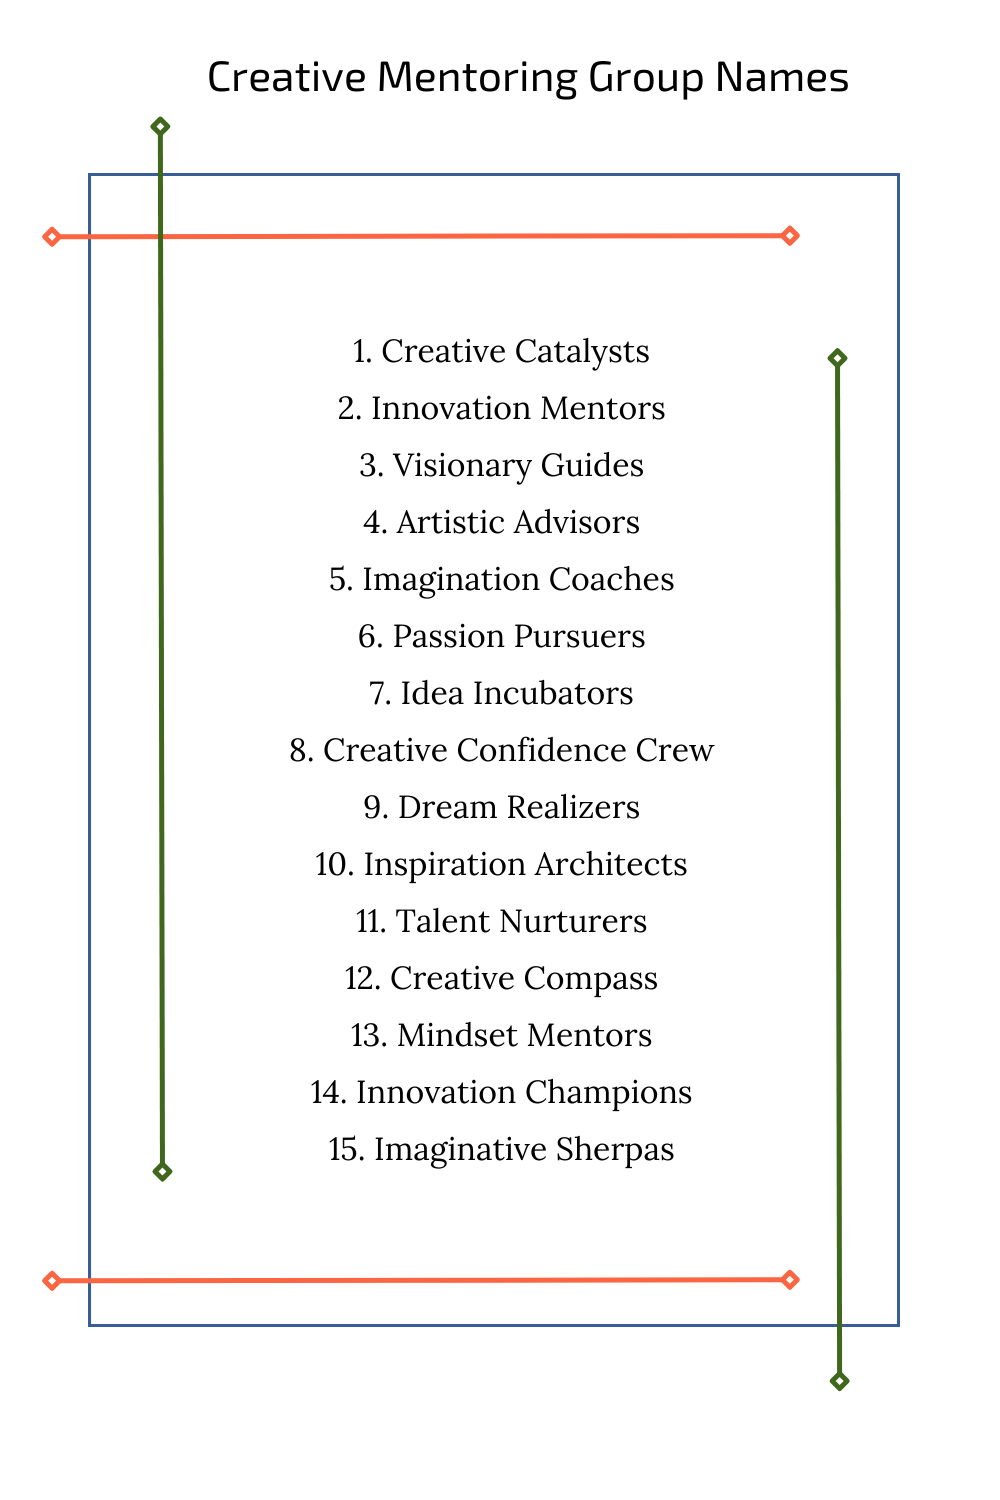 Creative Mentoring Group Names